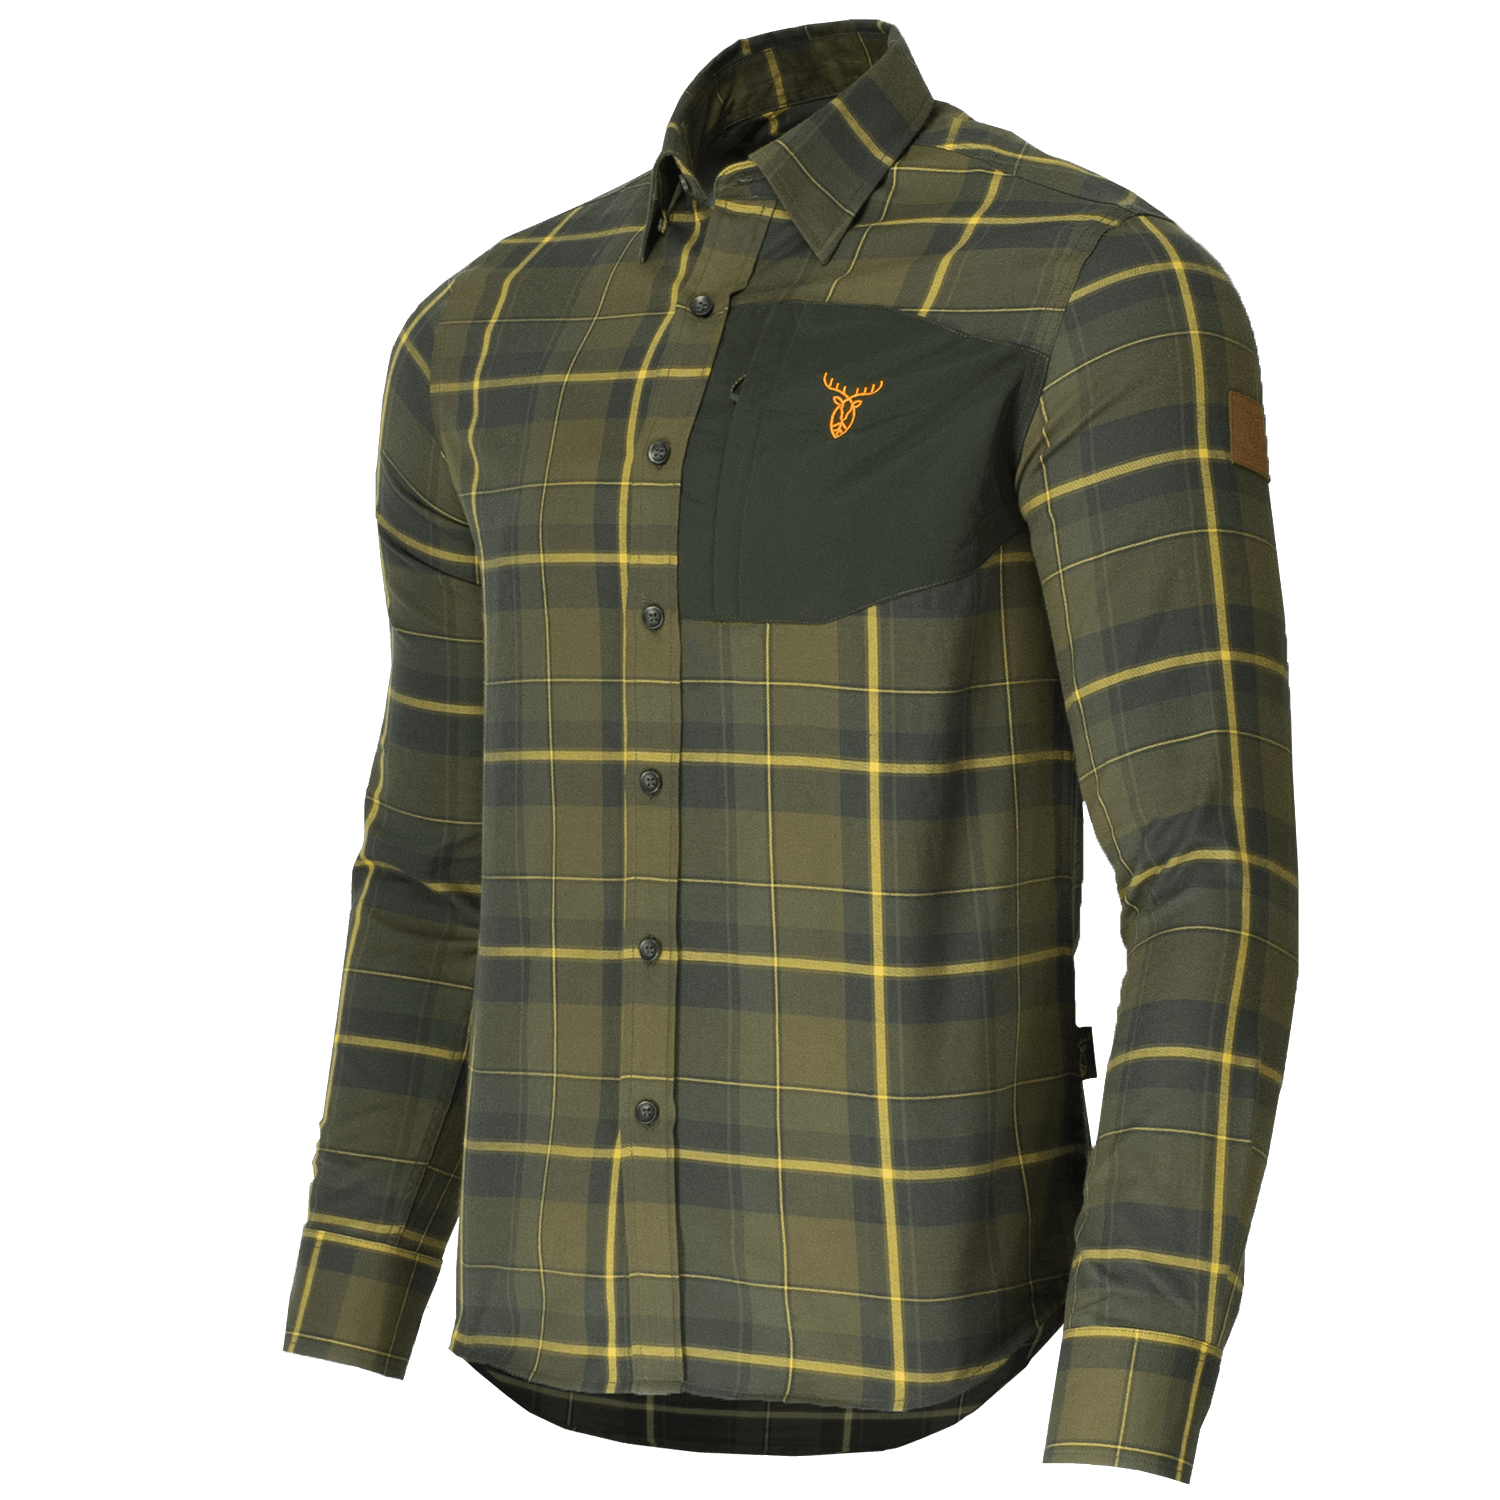 Pirscher Gear Field Shirt (Crsip Green) - Hunting Shirts